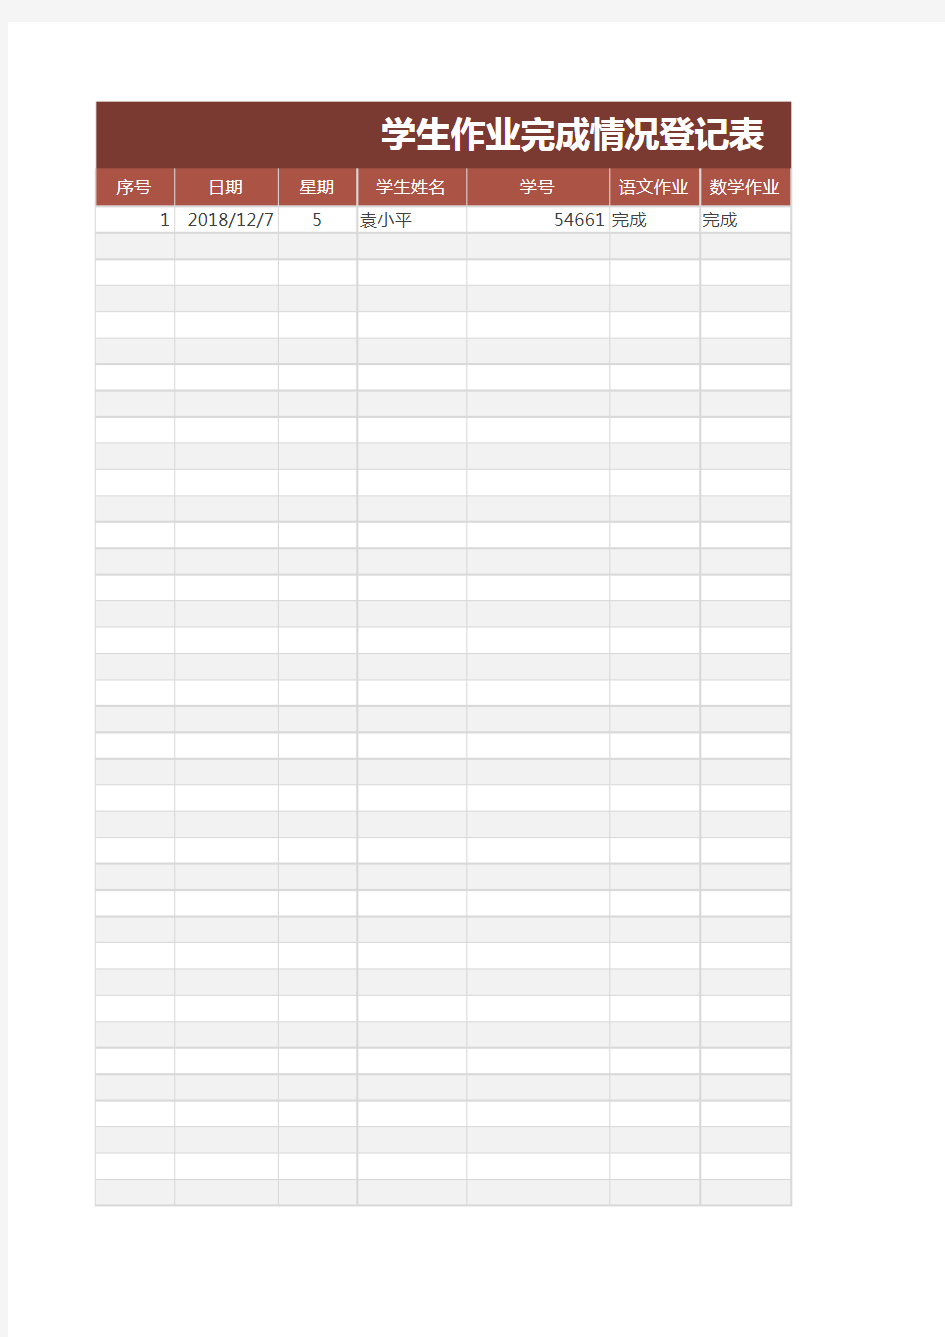 学生作业完成情况登记表Excel模板